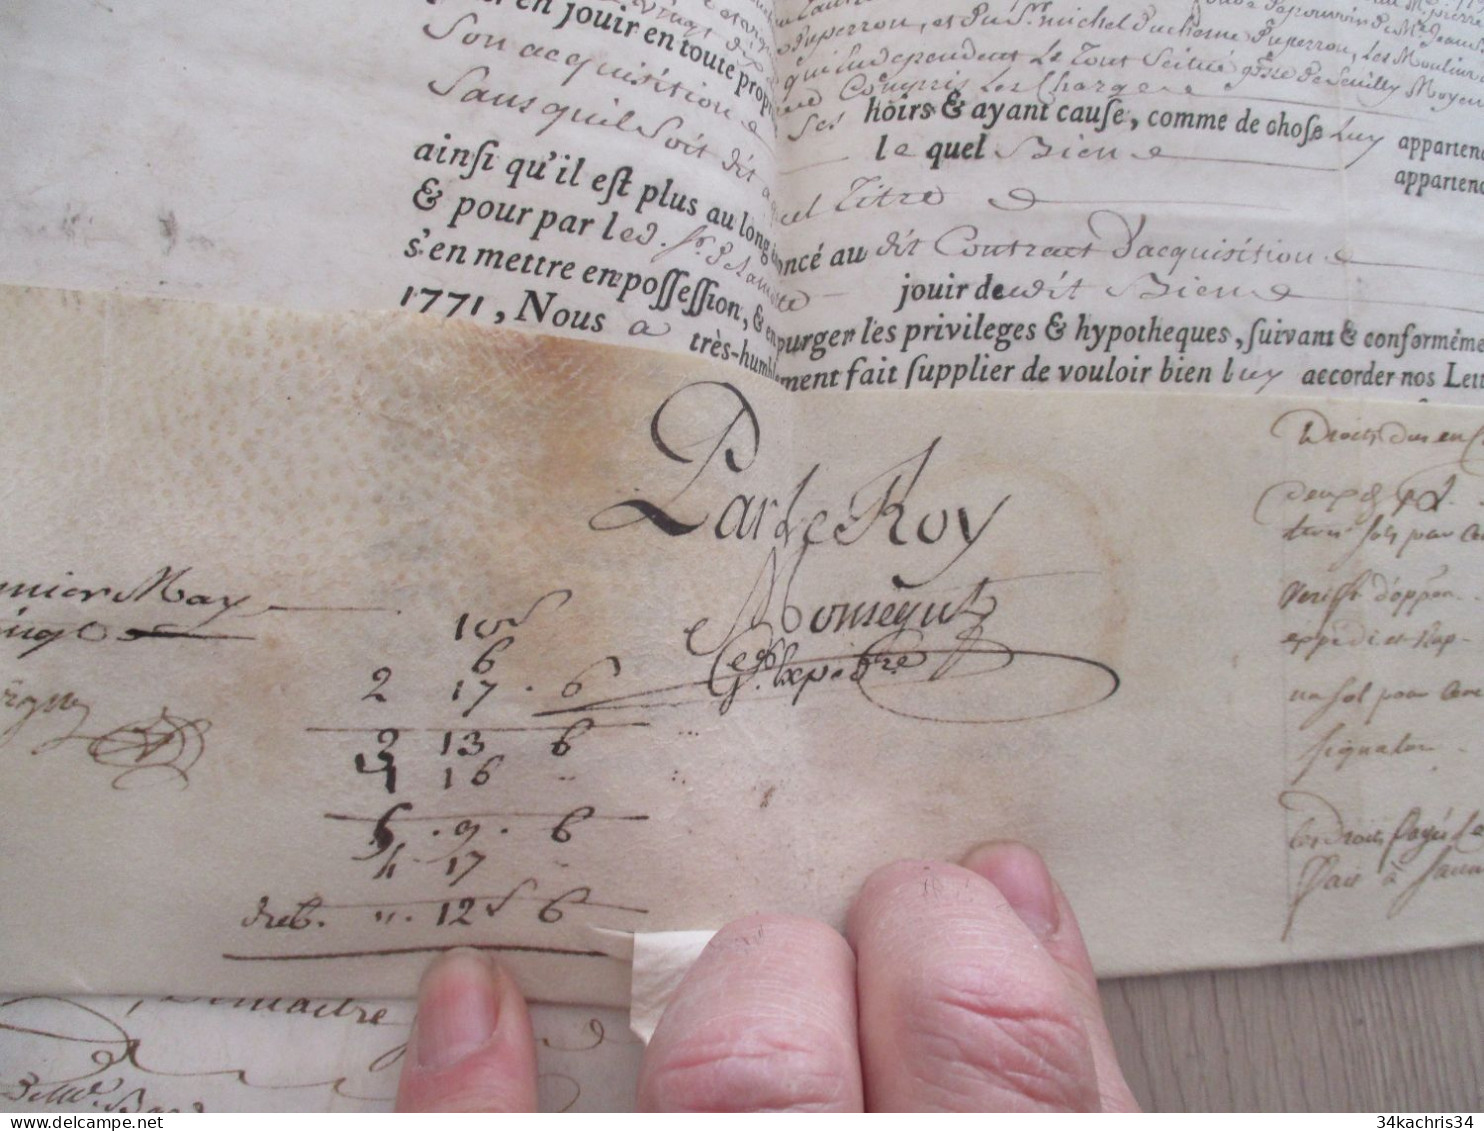 X2 Pièce signée velin avec sceaux LAMOTHE BARACE colonel baron  1780 lettres ratification Loudun Tours Biens ....